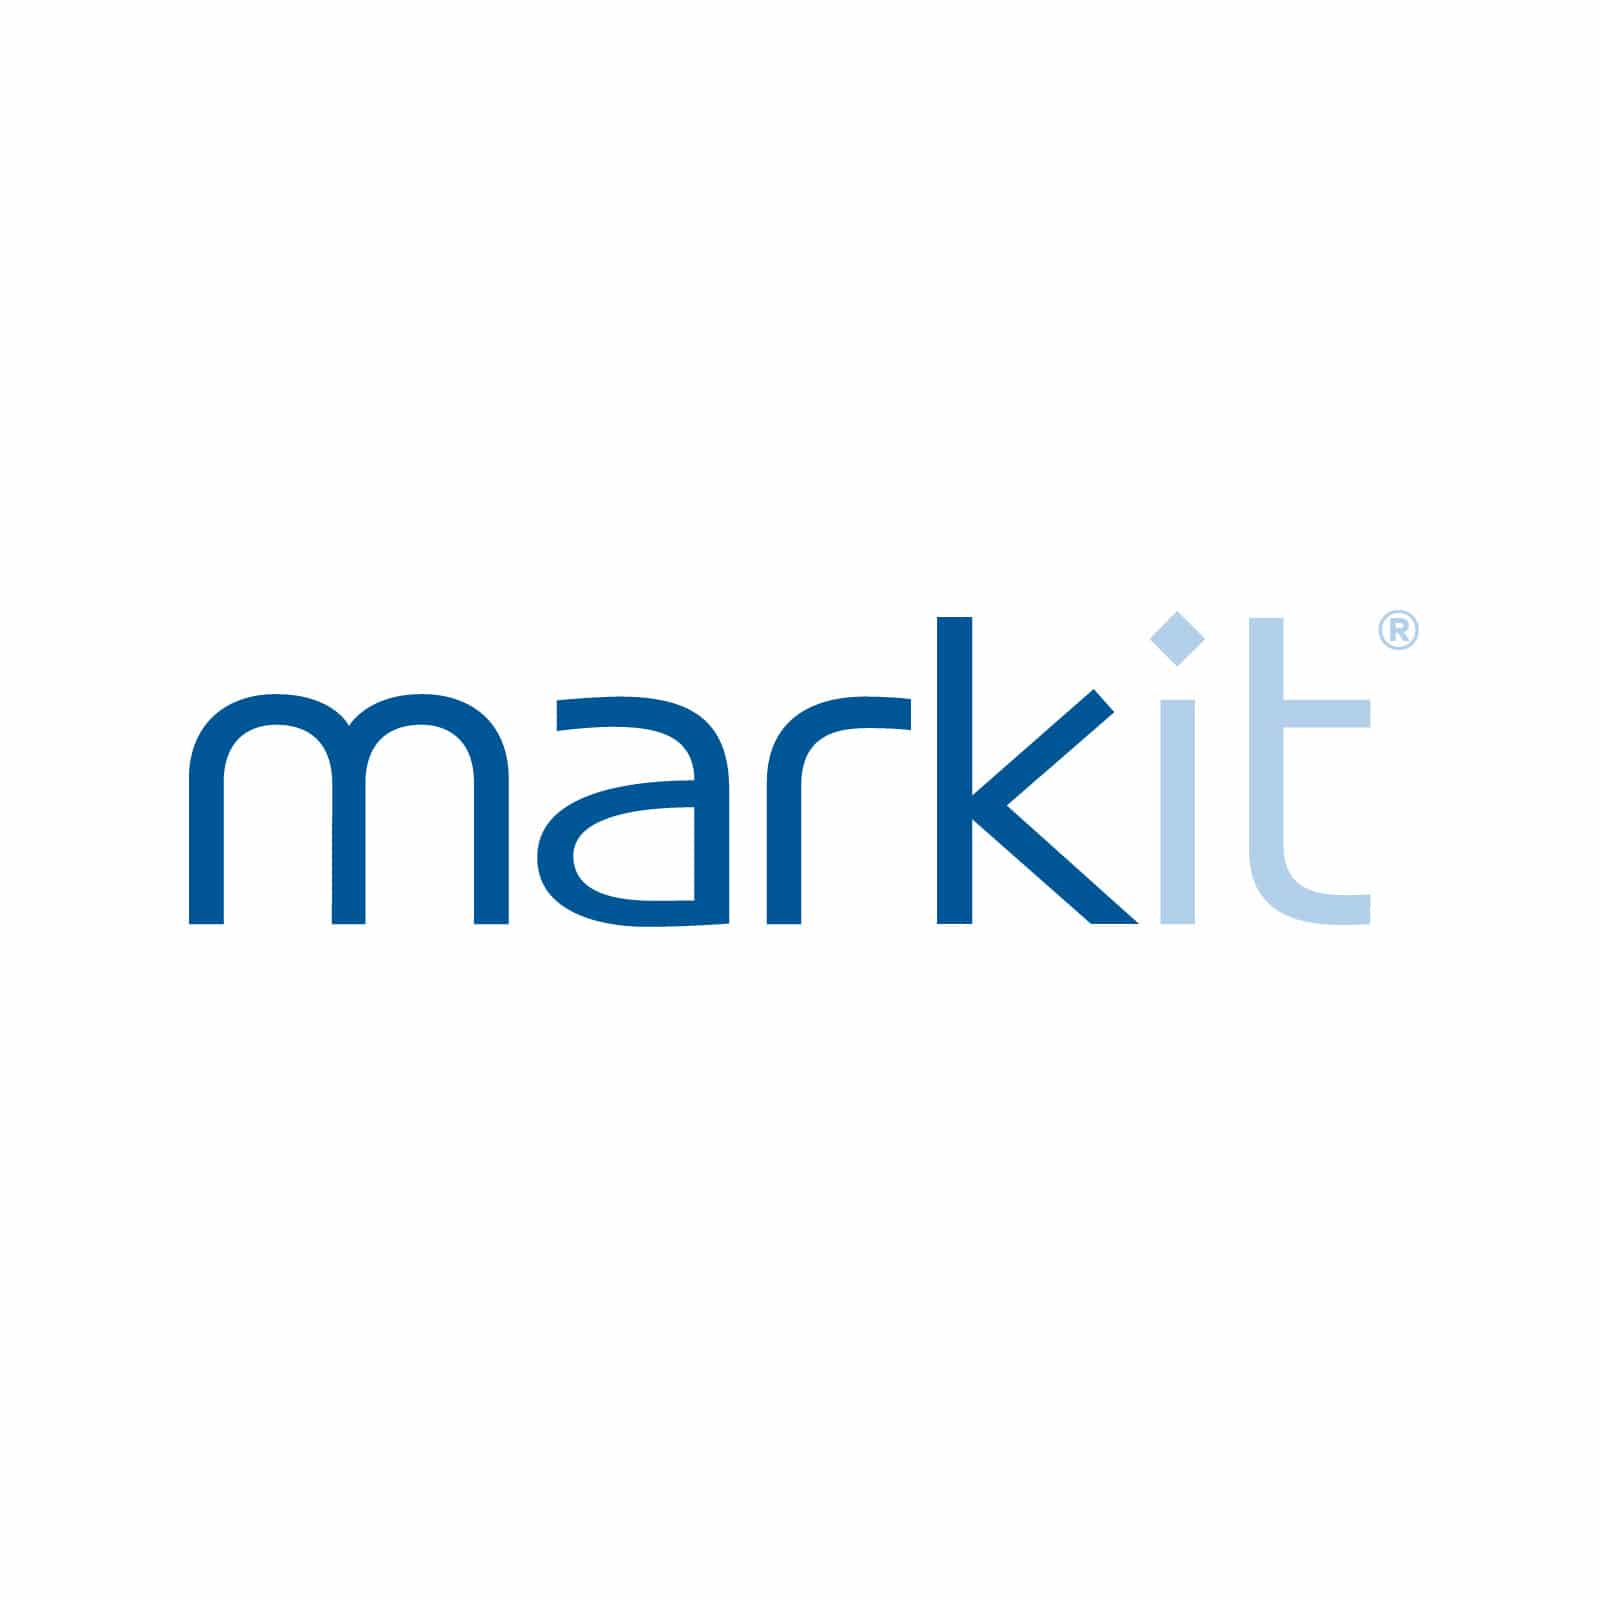 markit_logo